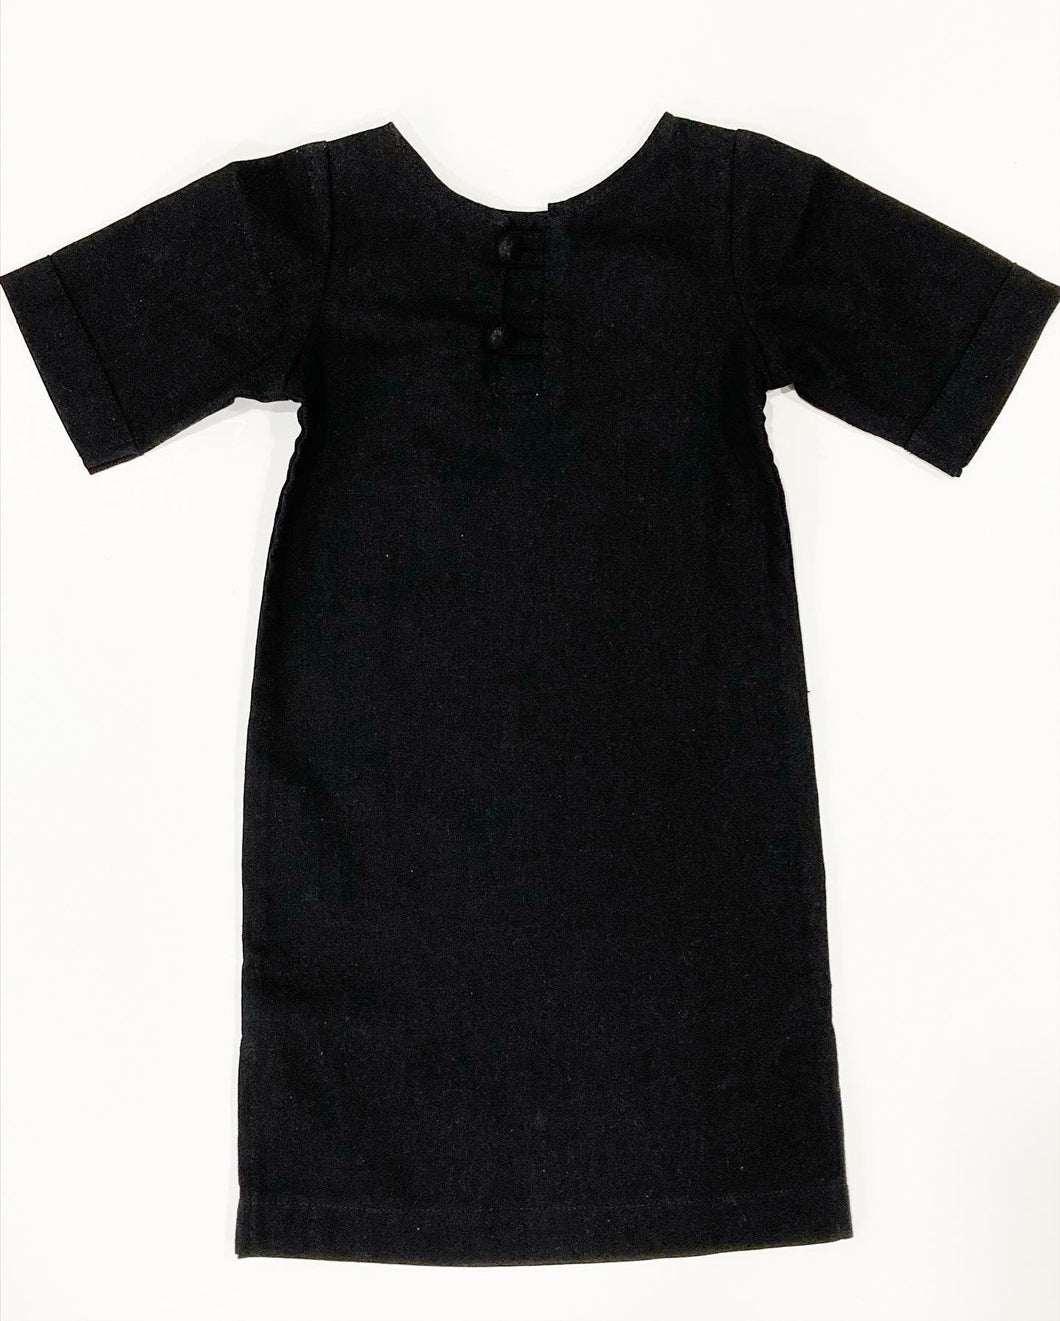 abaya/jilbab (black)